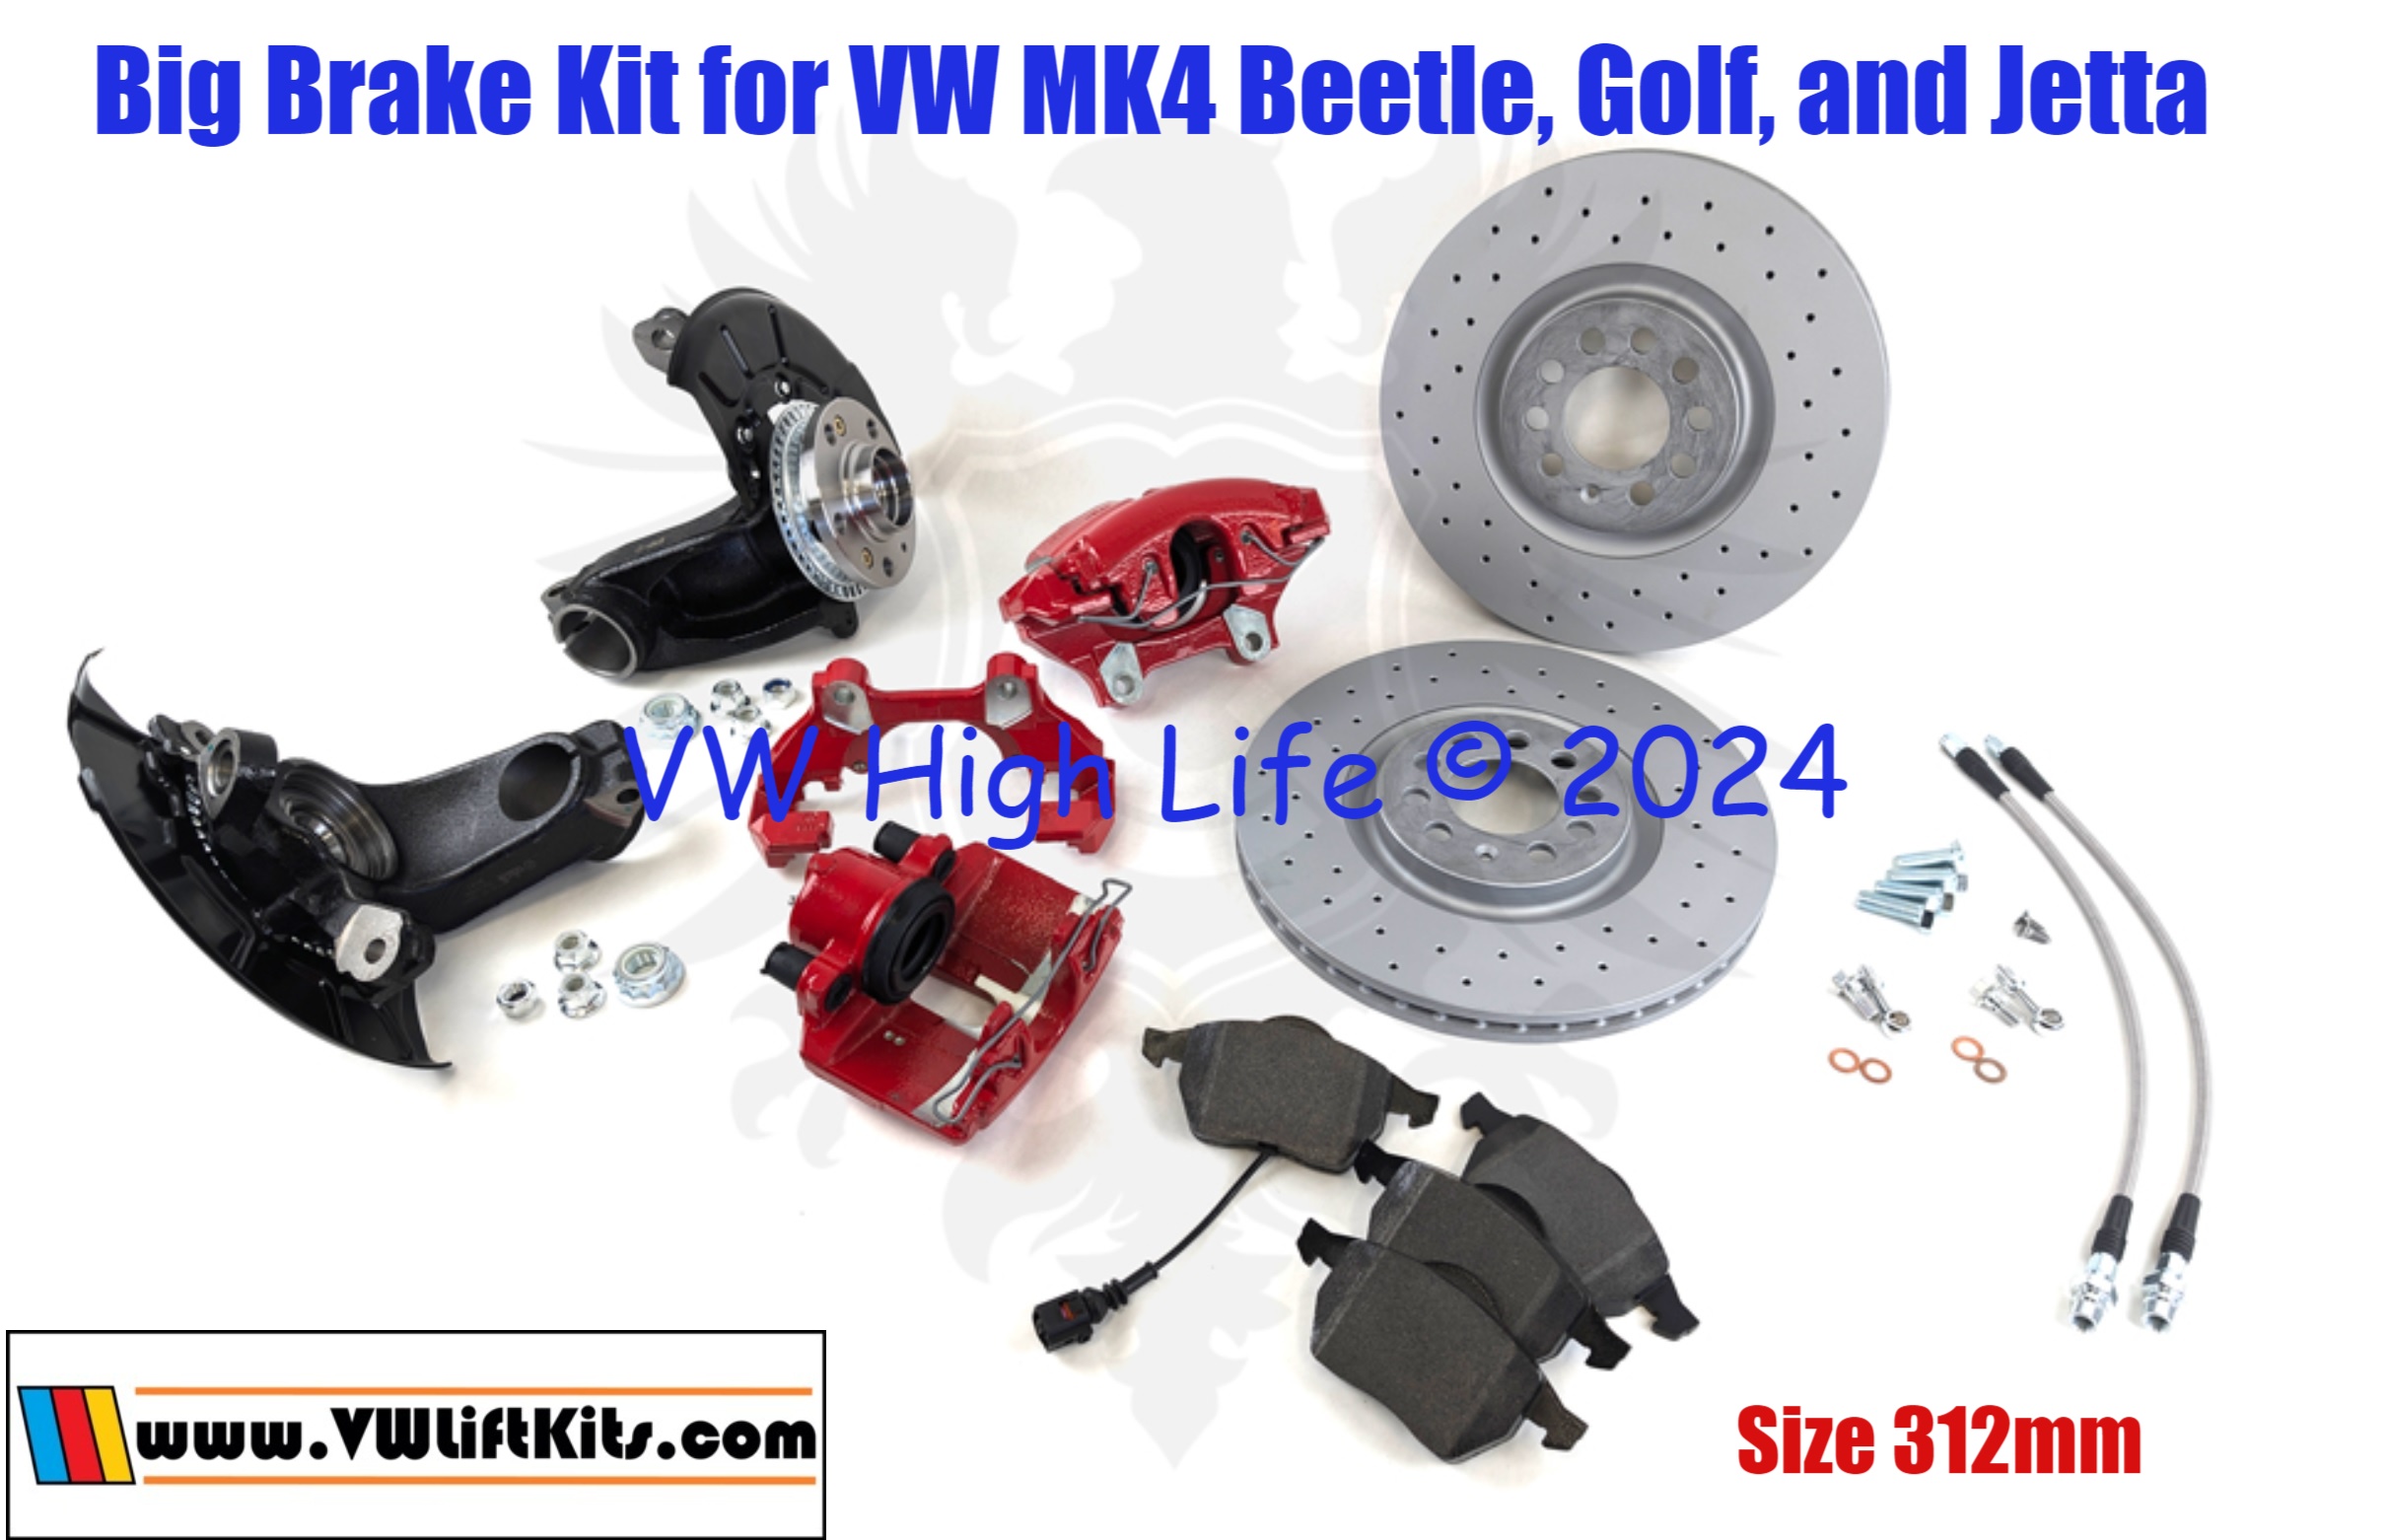 312 mm European Big Brake Kit for VW MK4 Beetle, Gof, and Jetta! Upgrade your braking power!